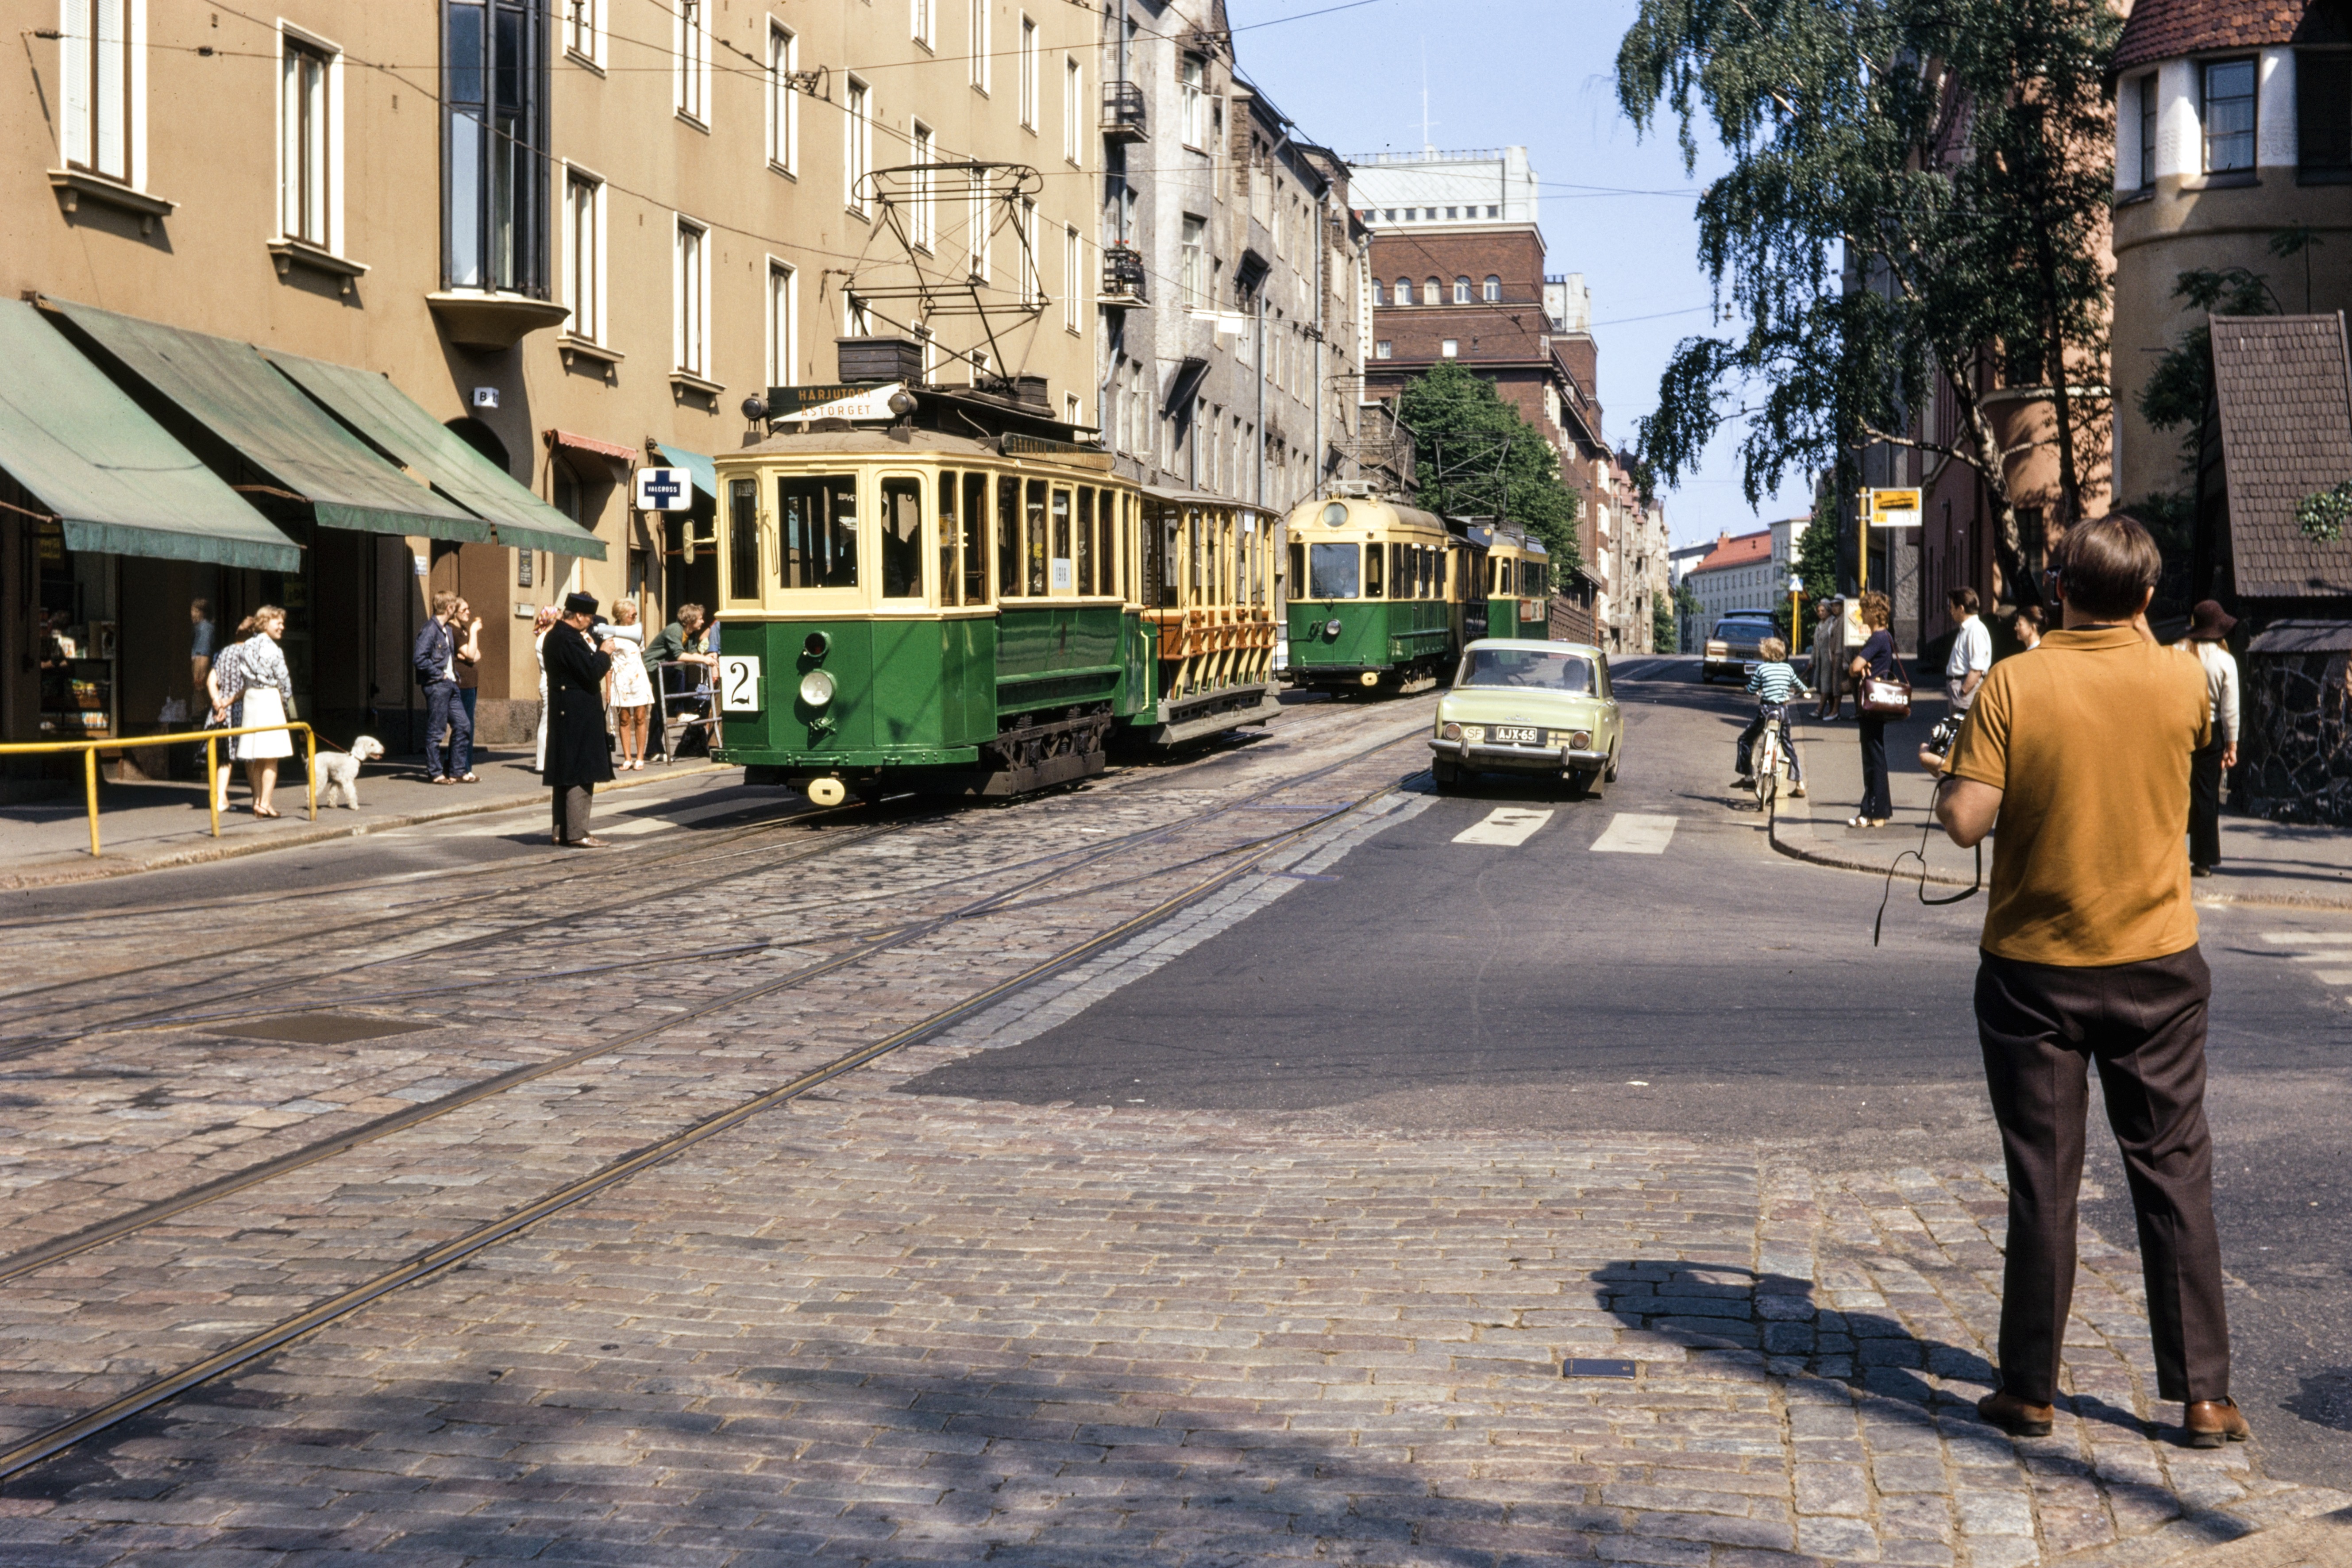 Vanhan raitiovaunukaluston esittely Helsinki-päivien aikana 1971. Etualalla oleva raitiovaunu on vuonna 1911 valmistettu moottorivaunu (HKL-19).